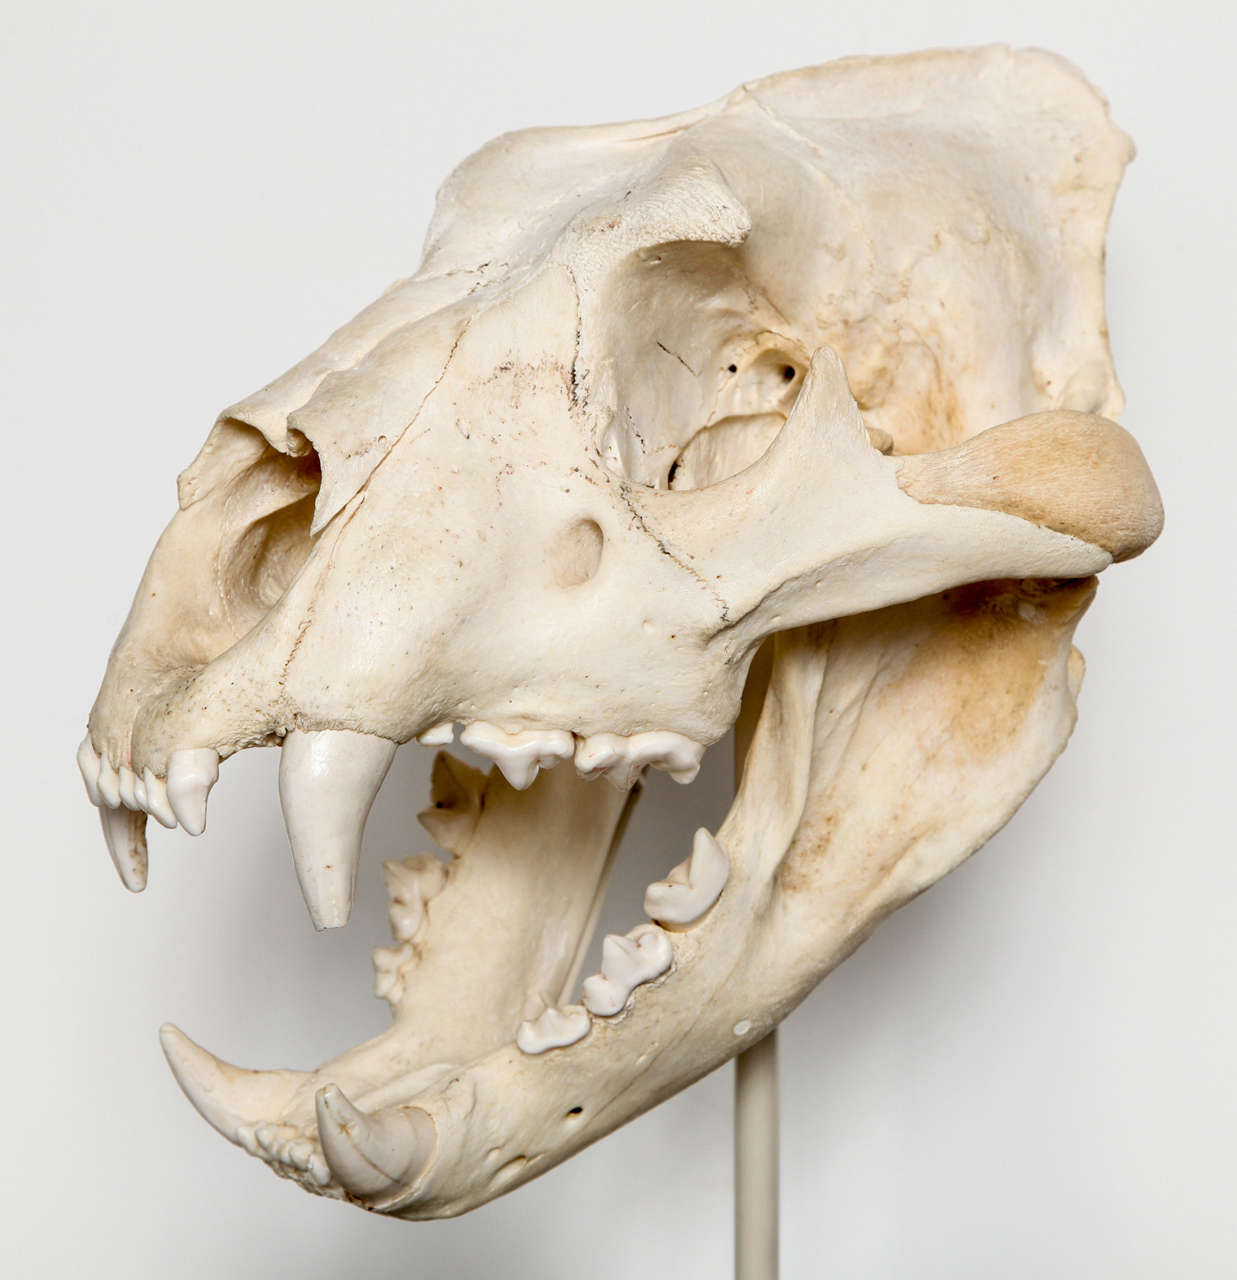 tiger skull - Google Search | Tiger skull, Animal skeletons, Skull art